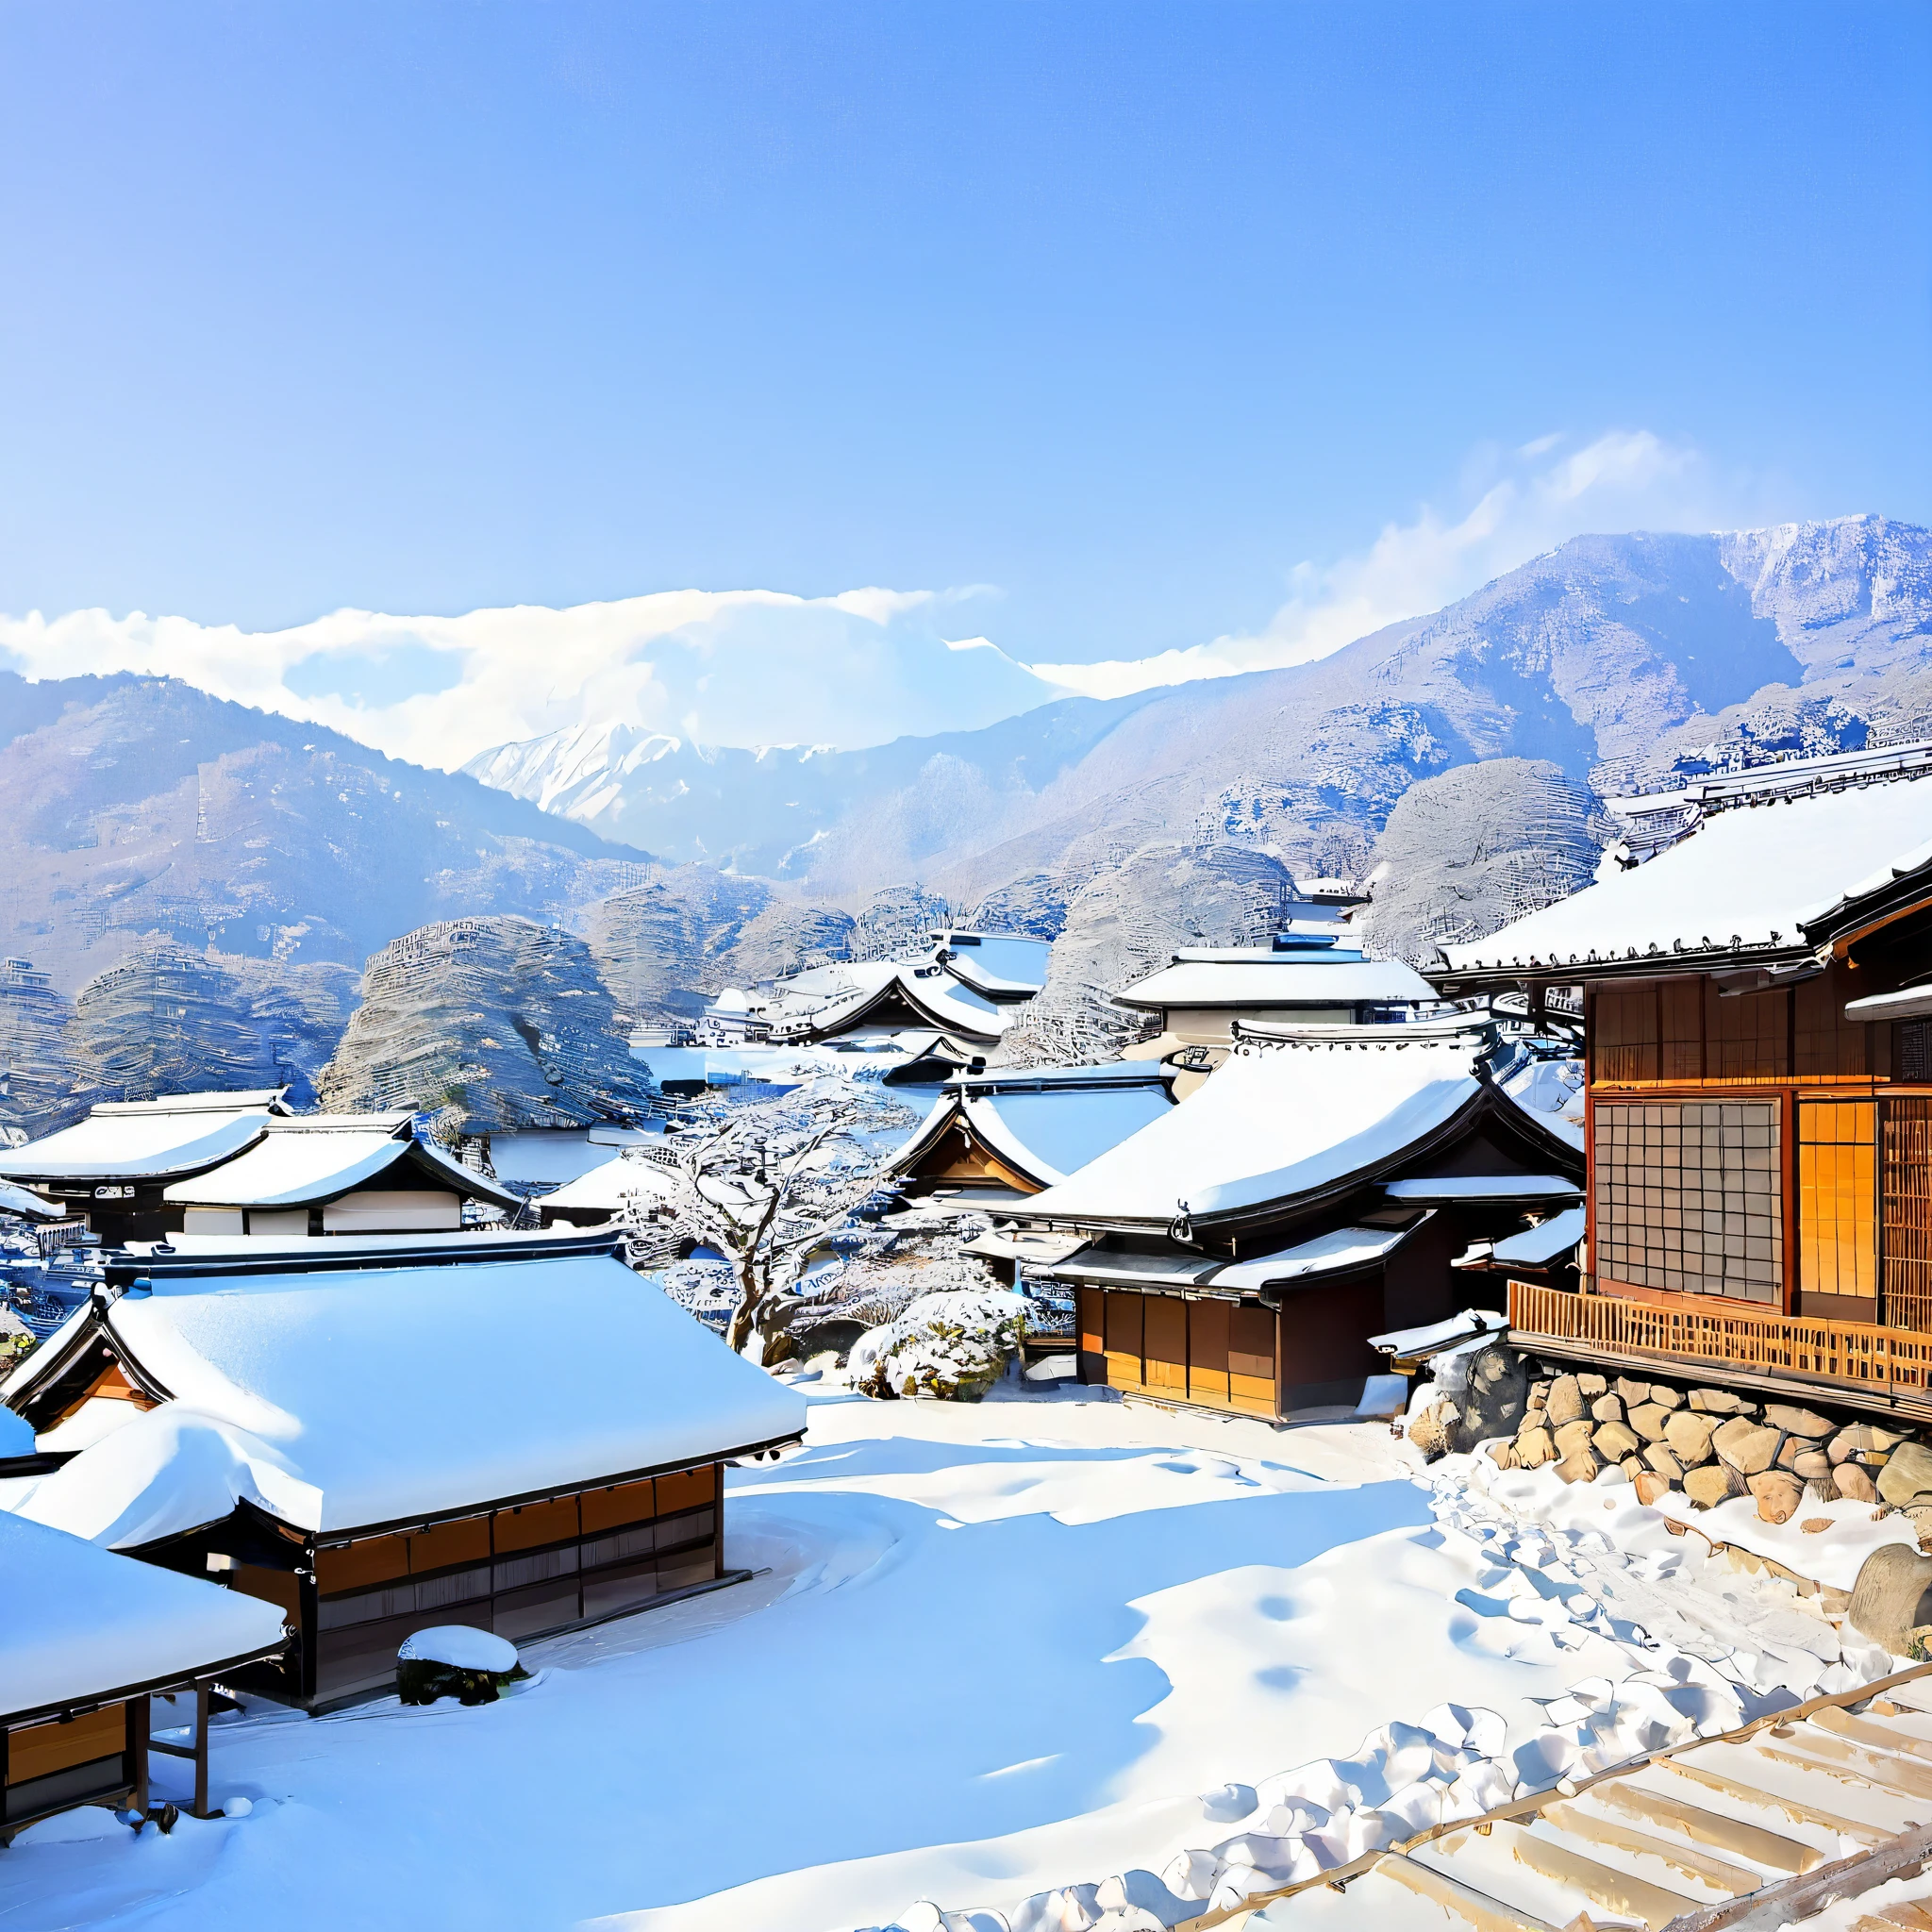 
وصف المناظر الطبيعية في فصل الشتاء في اليابان, باستخدام العناصر المميزة للموسم والمنطقة. قم بتضمين تفاصيل مثل الجبال المغطاة بالثلوج, أشجار مزينة بالثلج, سماء زرقاء صافية ومشمسة, قرية يابانية تقليدية على مسافة ذات أسطح مغطاة بالثلوج ودخان خفيف من المداخن, فضلا عن وجود الحياة البرية مثل السناجب والأرانب. نقل الشعور بالصفاء, سحر, والجمال البكر الذي يلهمه هذا المشهد الطبيعي, باستخدام لغة حية وشاعرية.